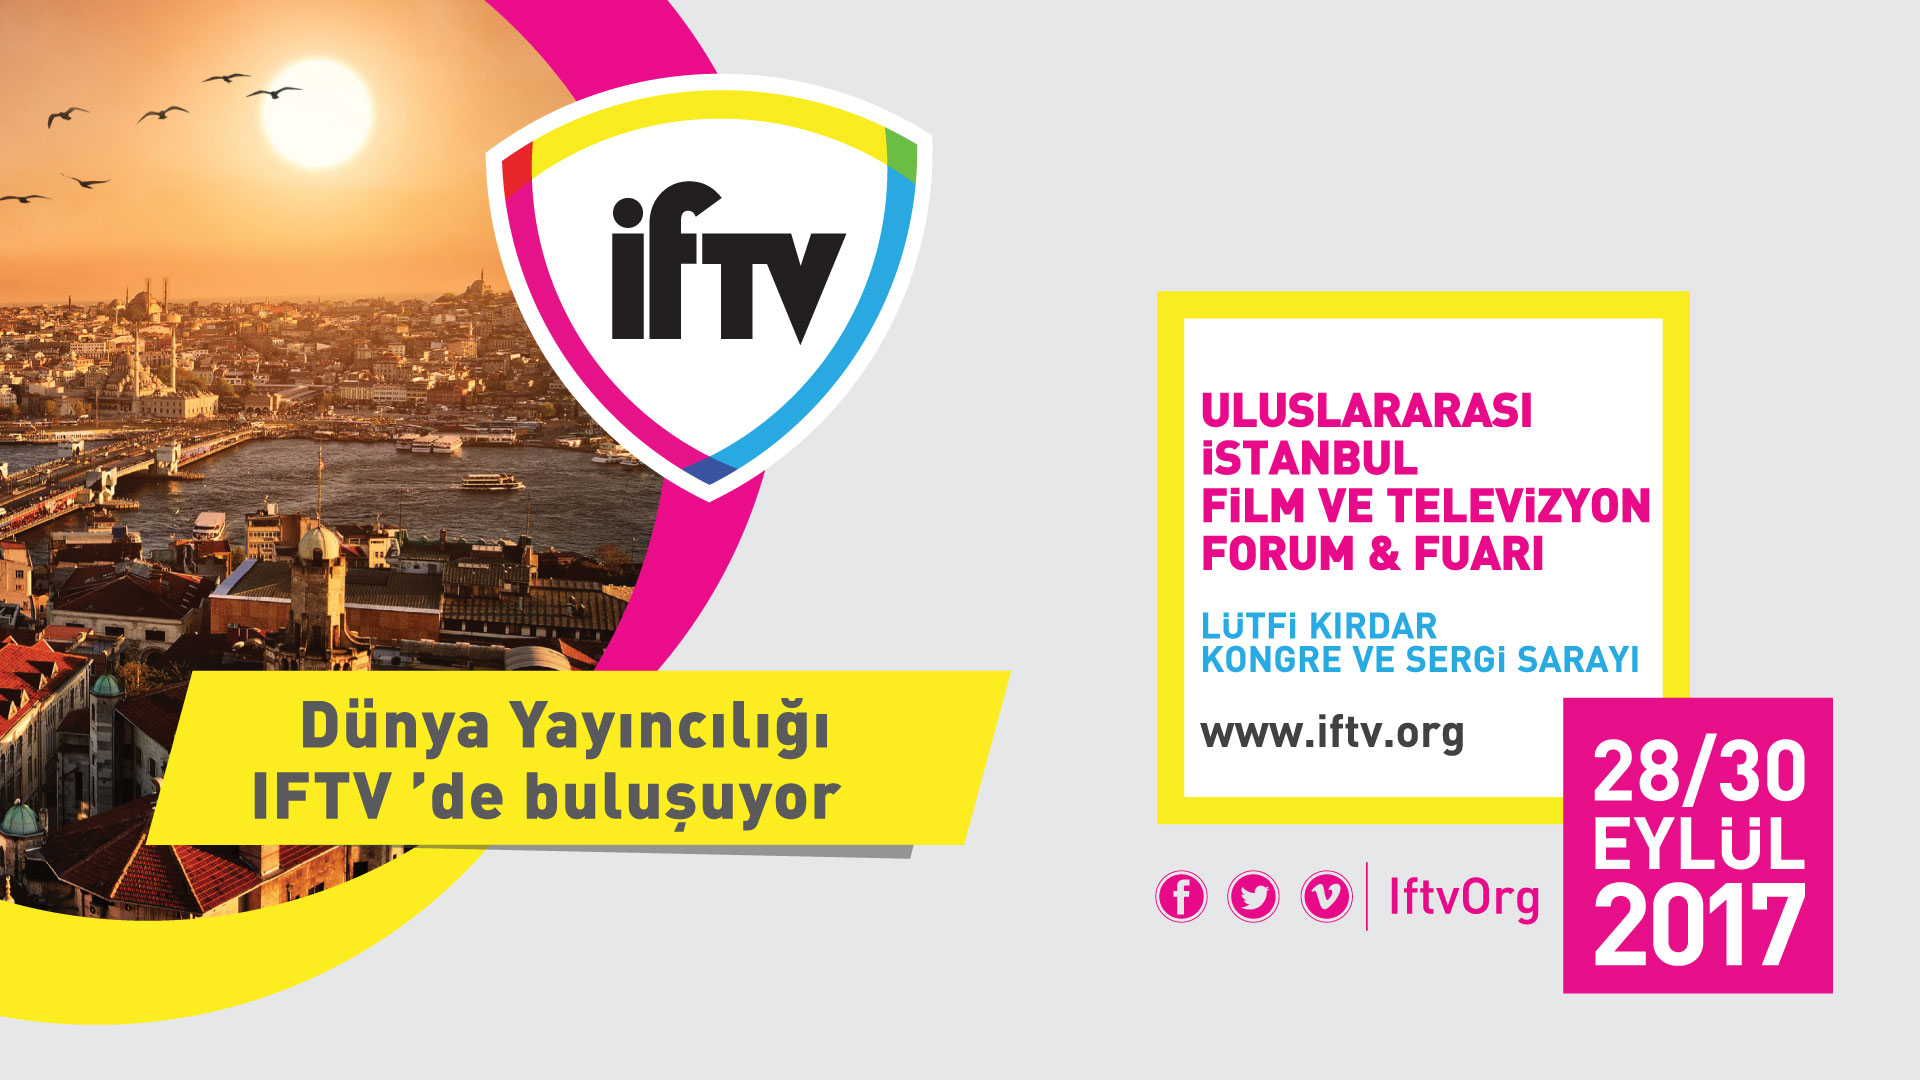 Dünya Yayıncılığı IFTV’de (Uluslararası İstanbul Film ve Televizyon Forum&Fuarı) buluşuyor